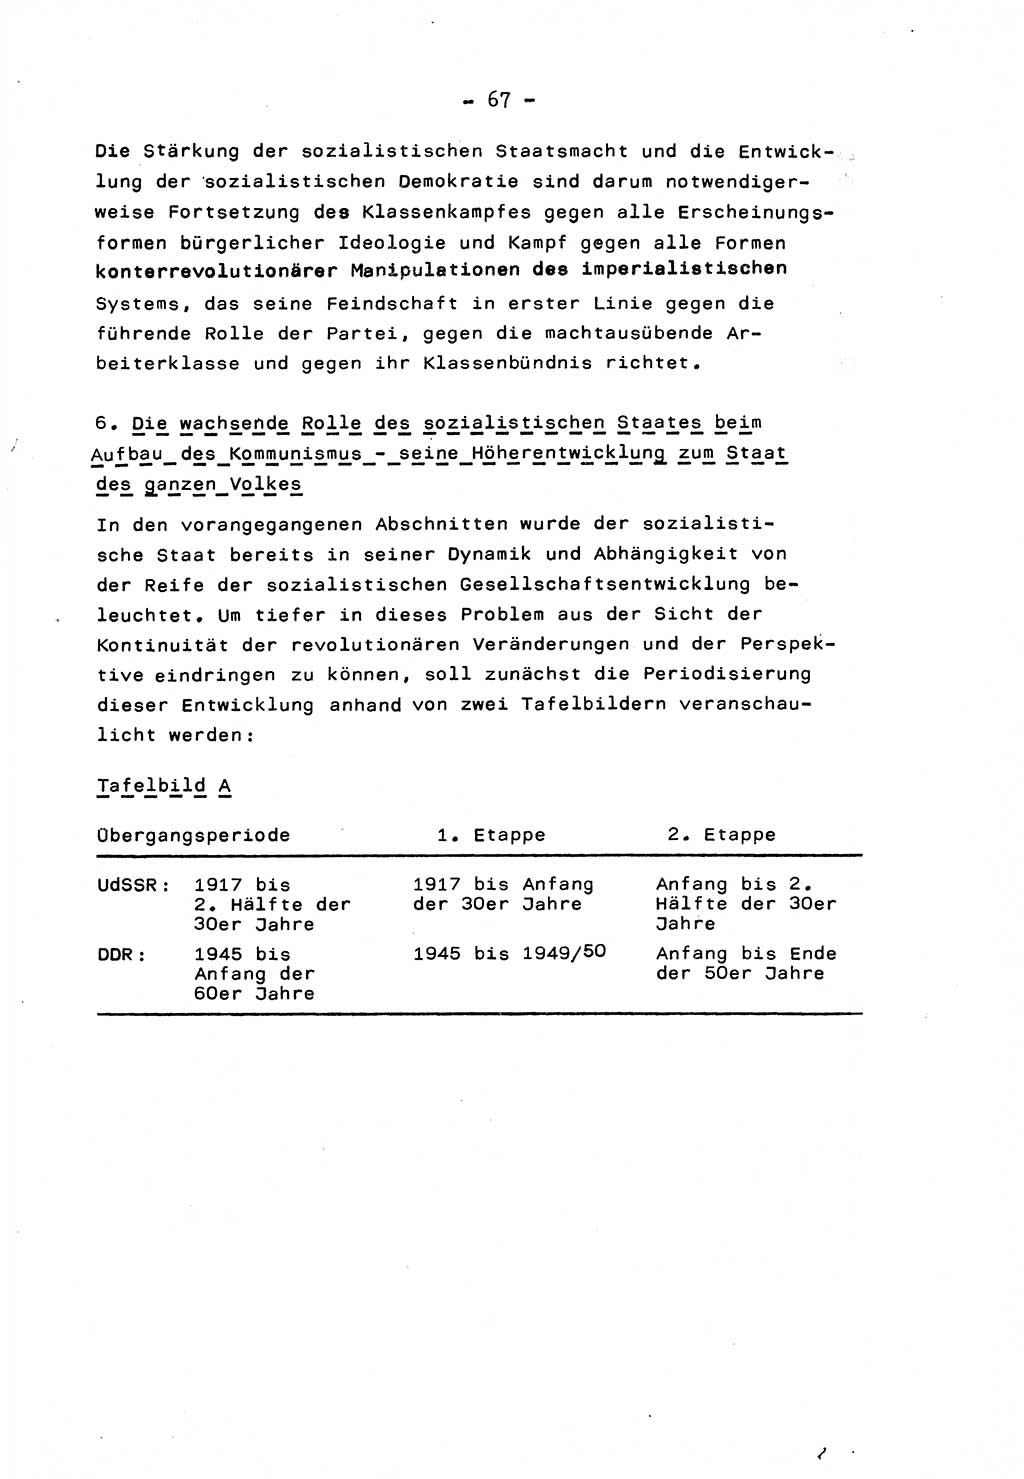 Marxistisch-leninistische Staats- und Rechtstheorie [Deutsche Demokratische Republik (DDR)] 1975, Seite 67 (ML St.-R.-Th. DDR 1975, S. 67)